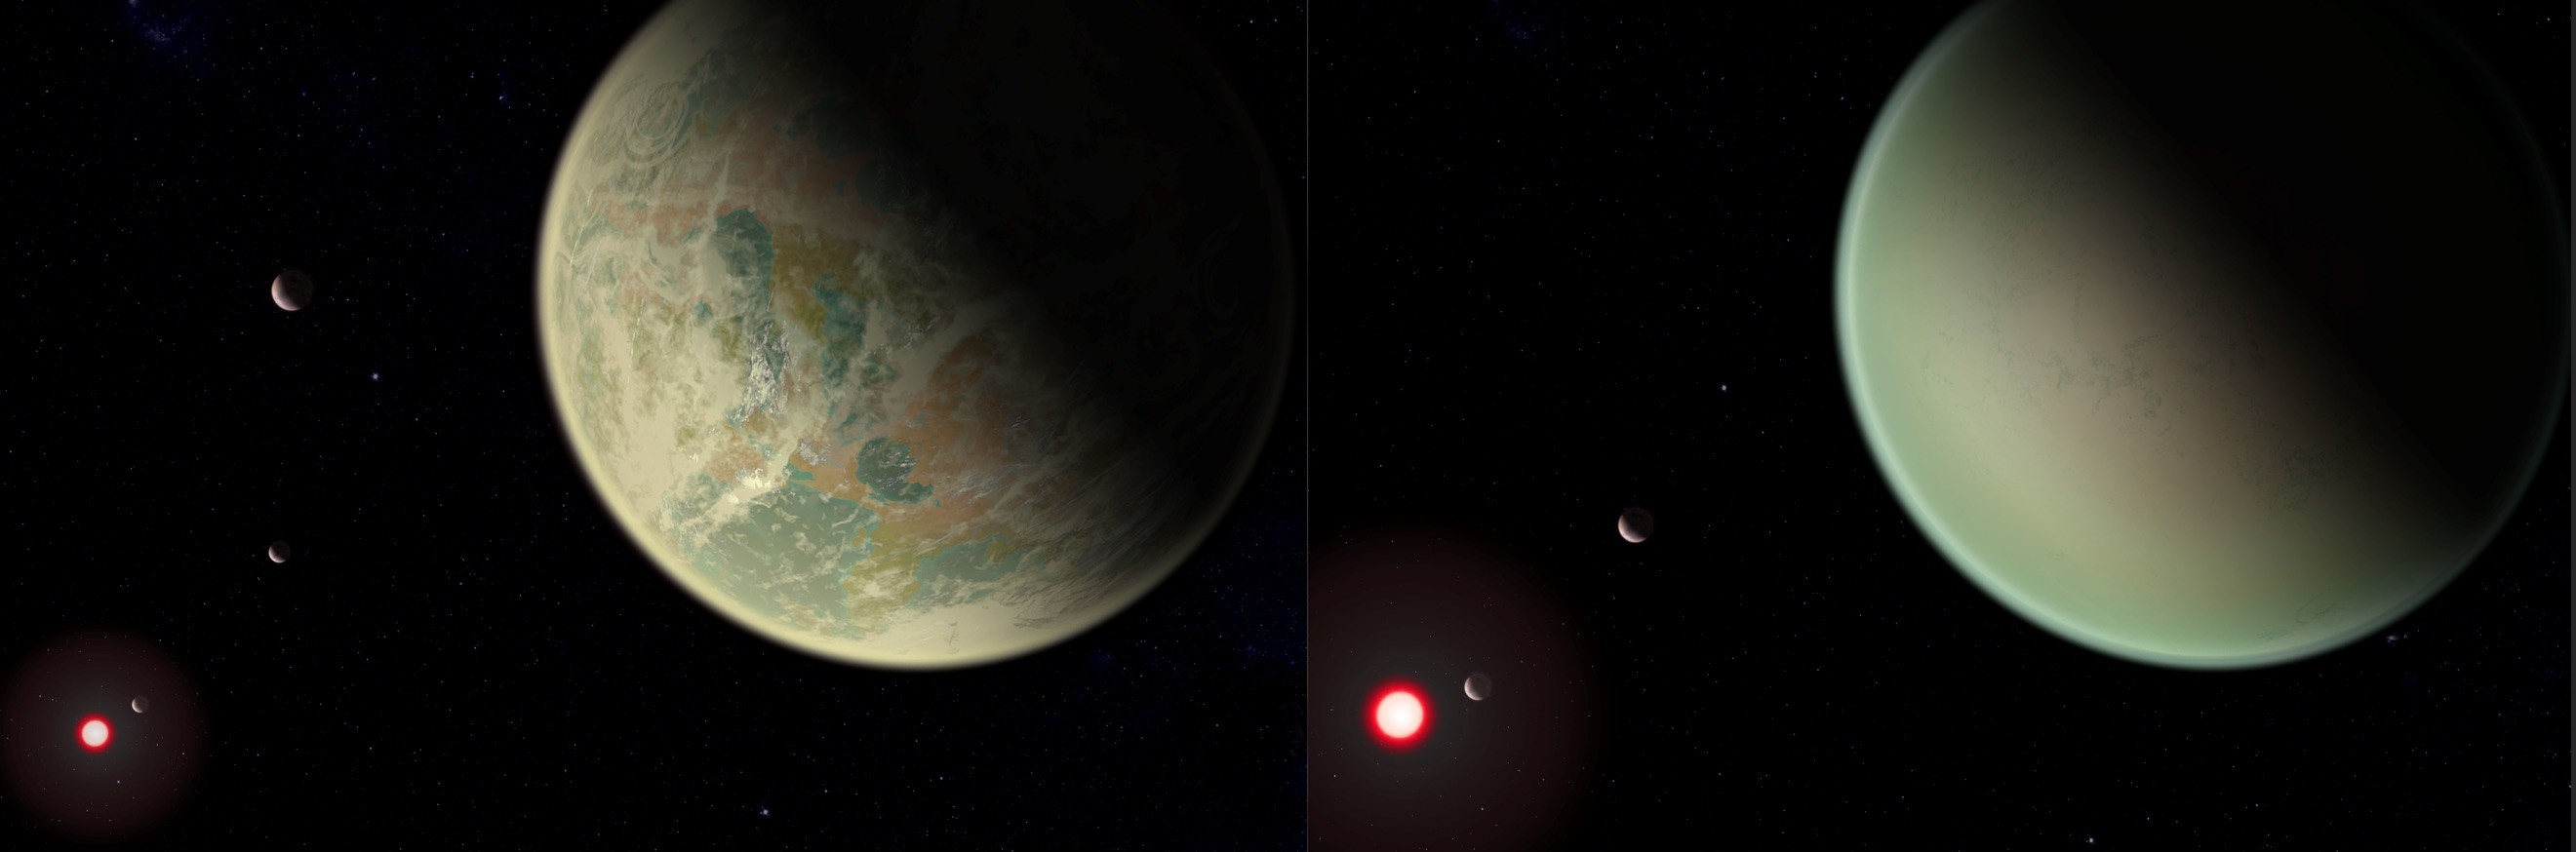 Cientistas criam novo método para detectar oxigênio em exoplanetas. À esquerda, planeta com água e oxigênio atmosférico. À direita, planeta sem água e oxigênio atmosférico. (Foto: NASA)